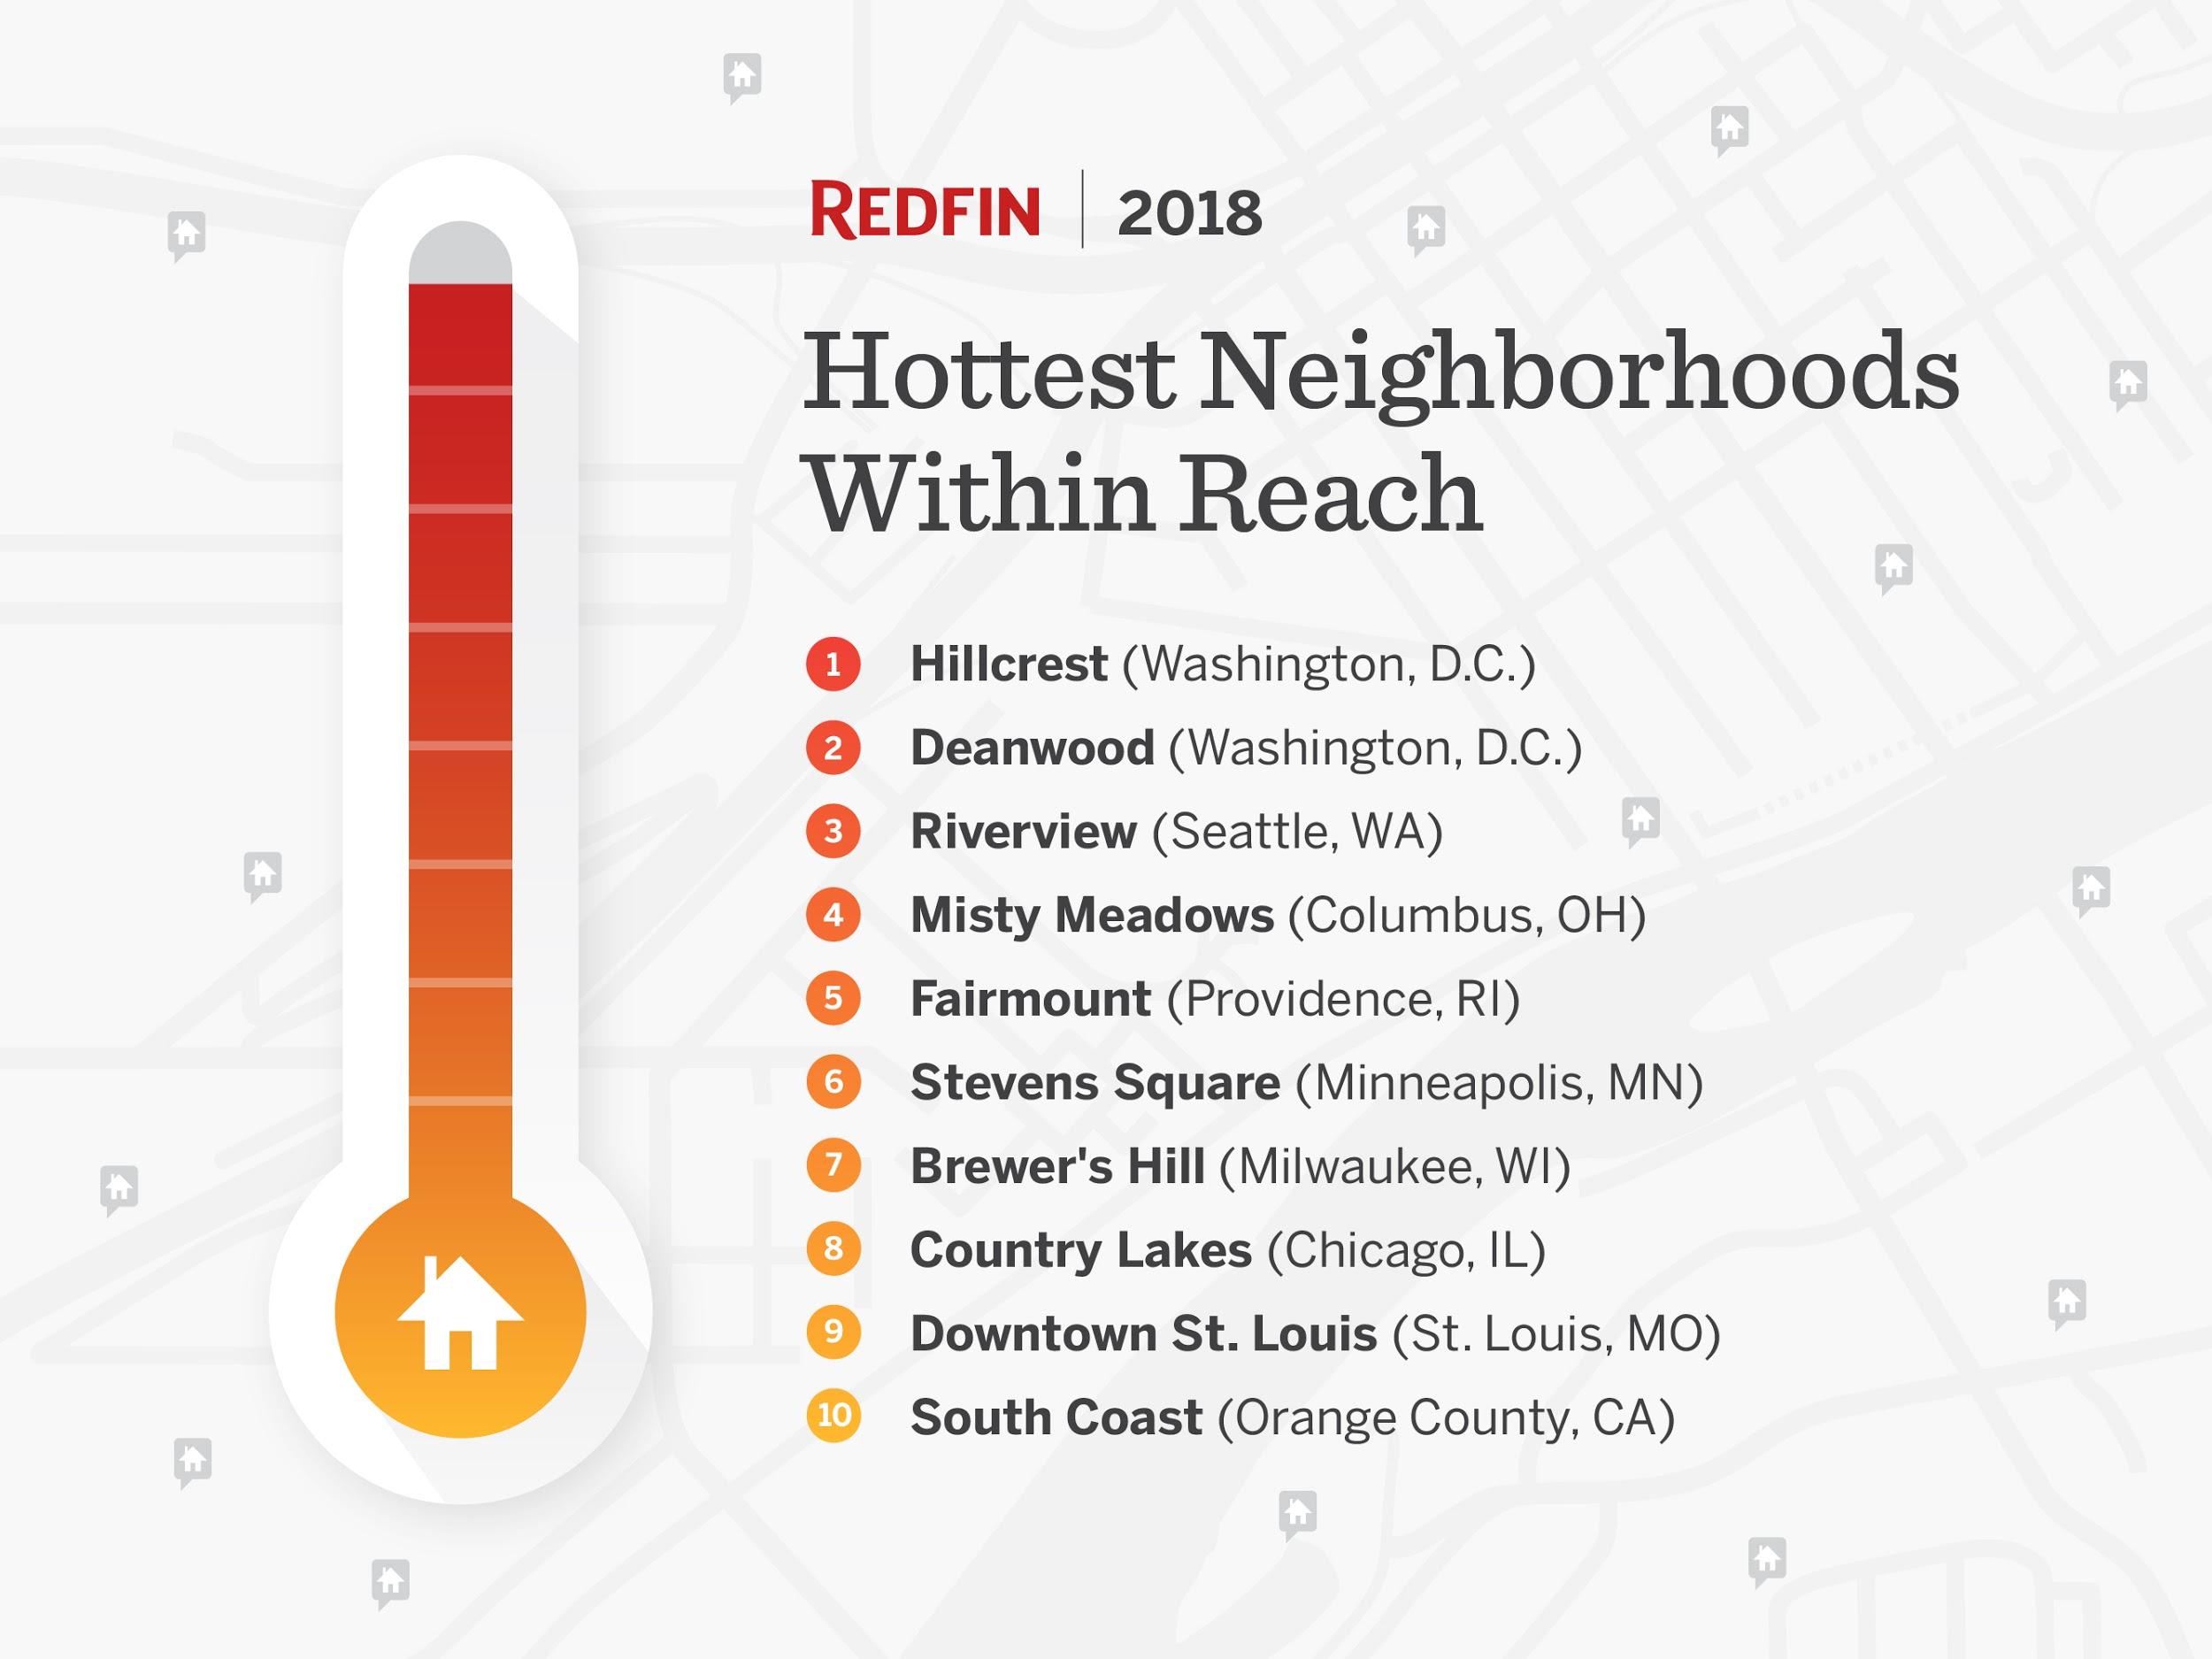 redfin Hottest Neighborhoods 2018 2